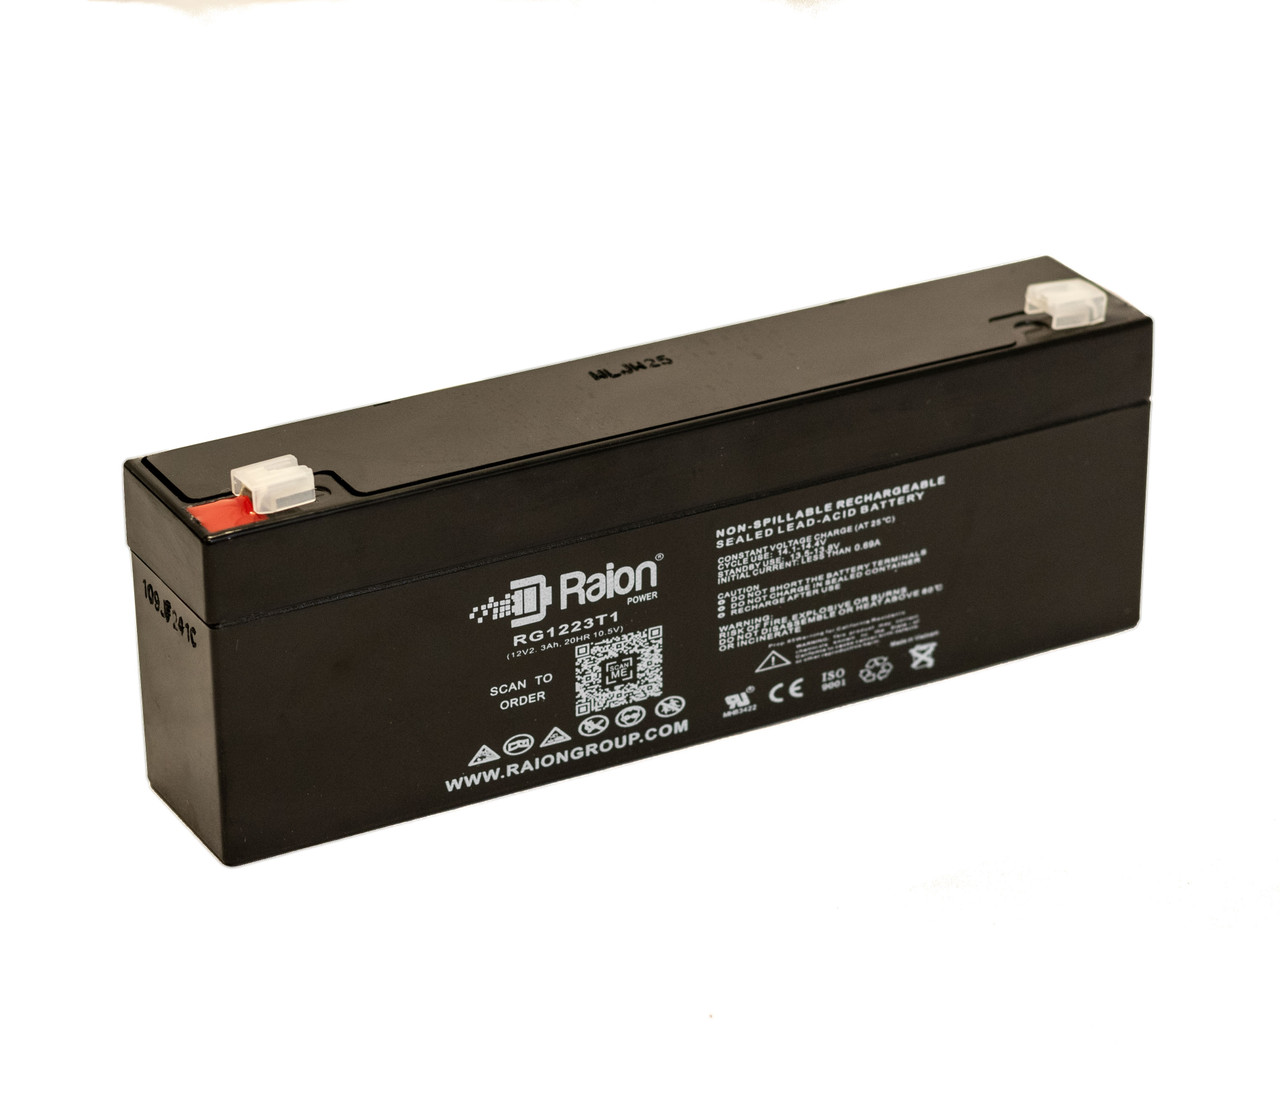 Raion Power RG1223T1 Replacement Battery for Douglas DG121.8